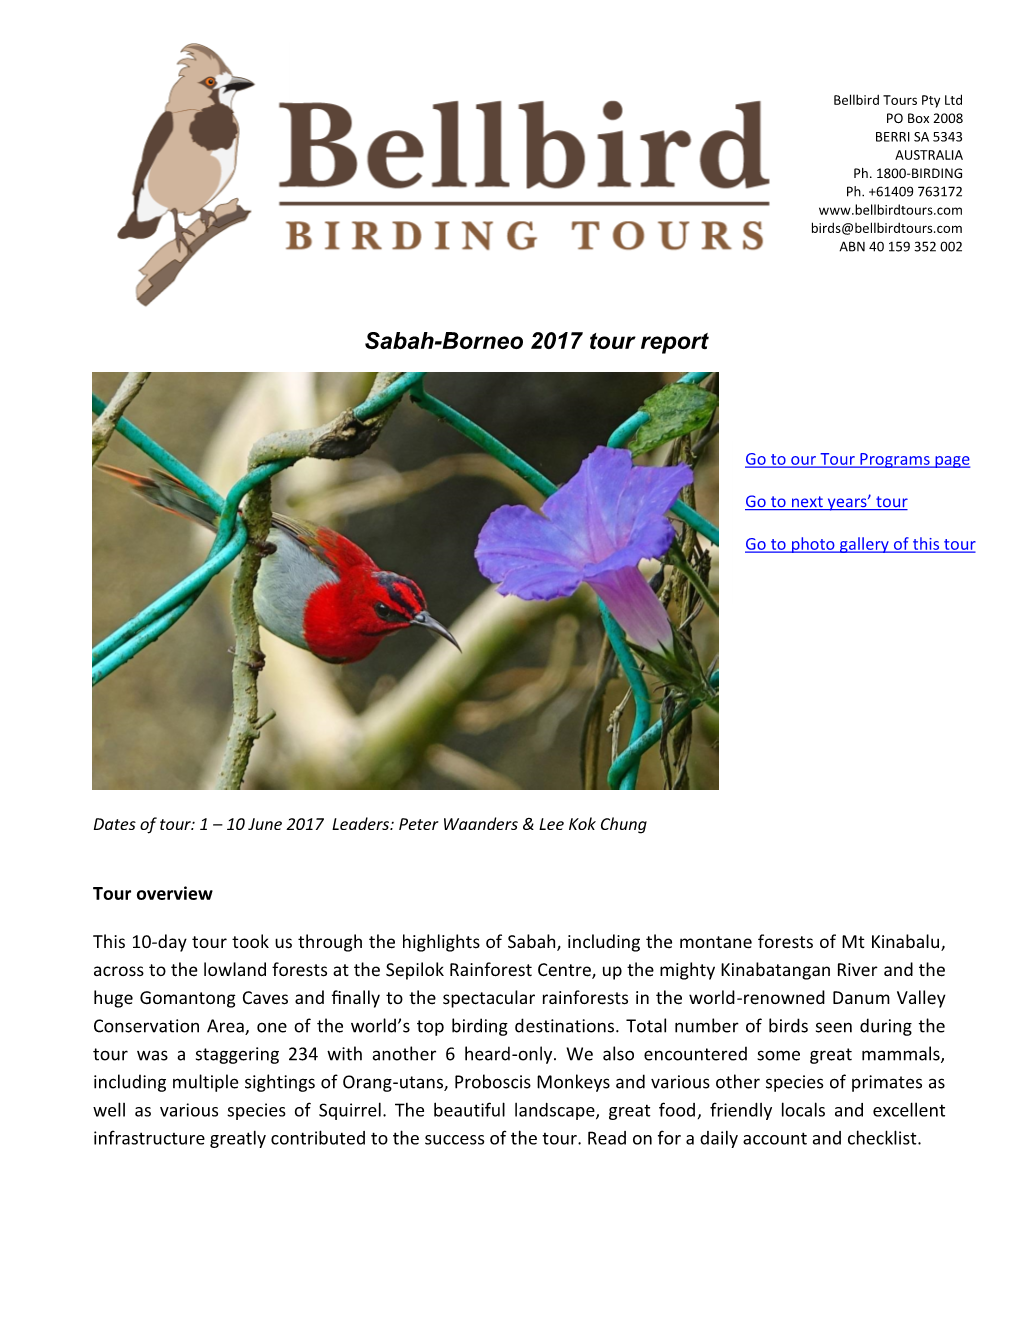 Bellbird Birding Tours